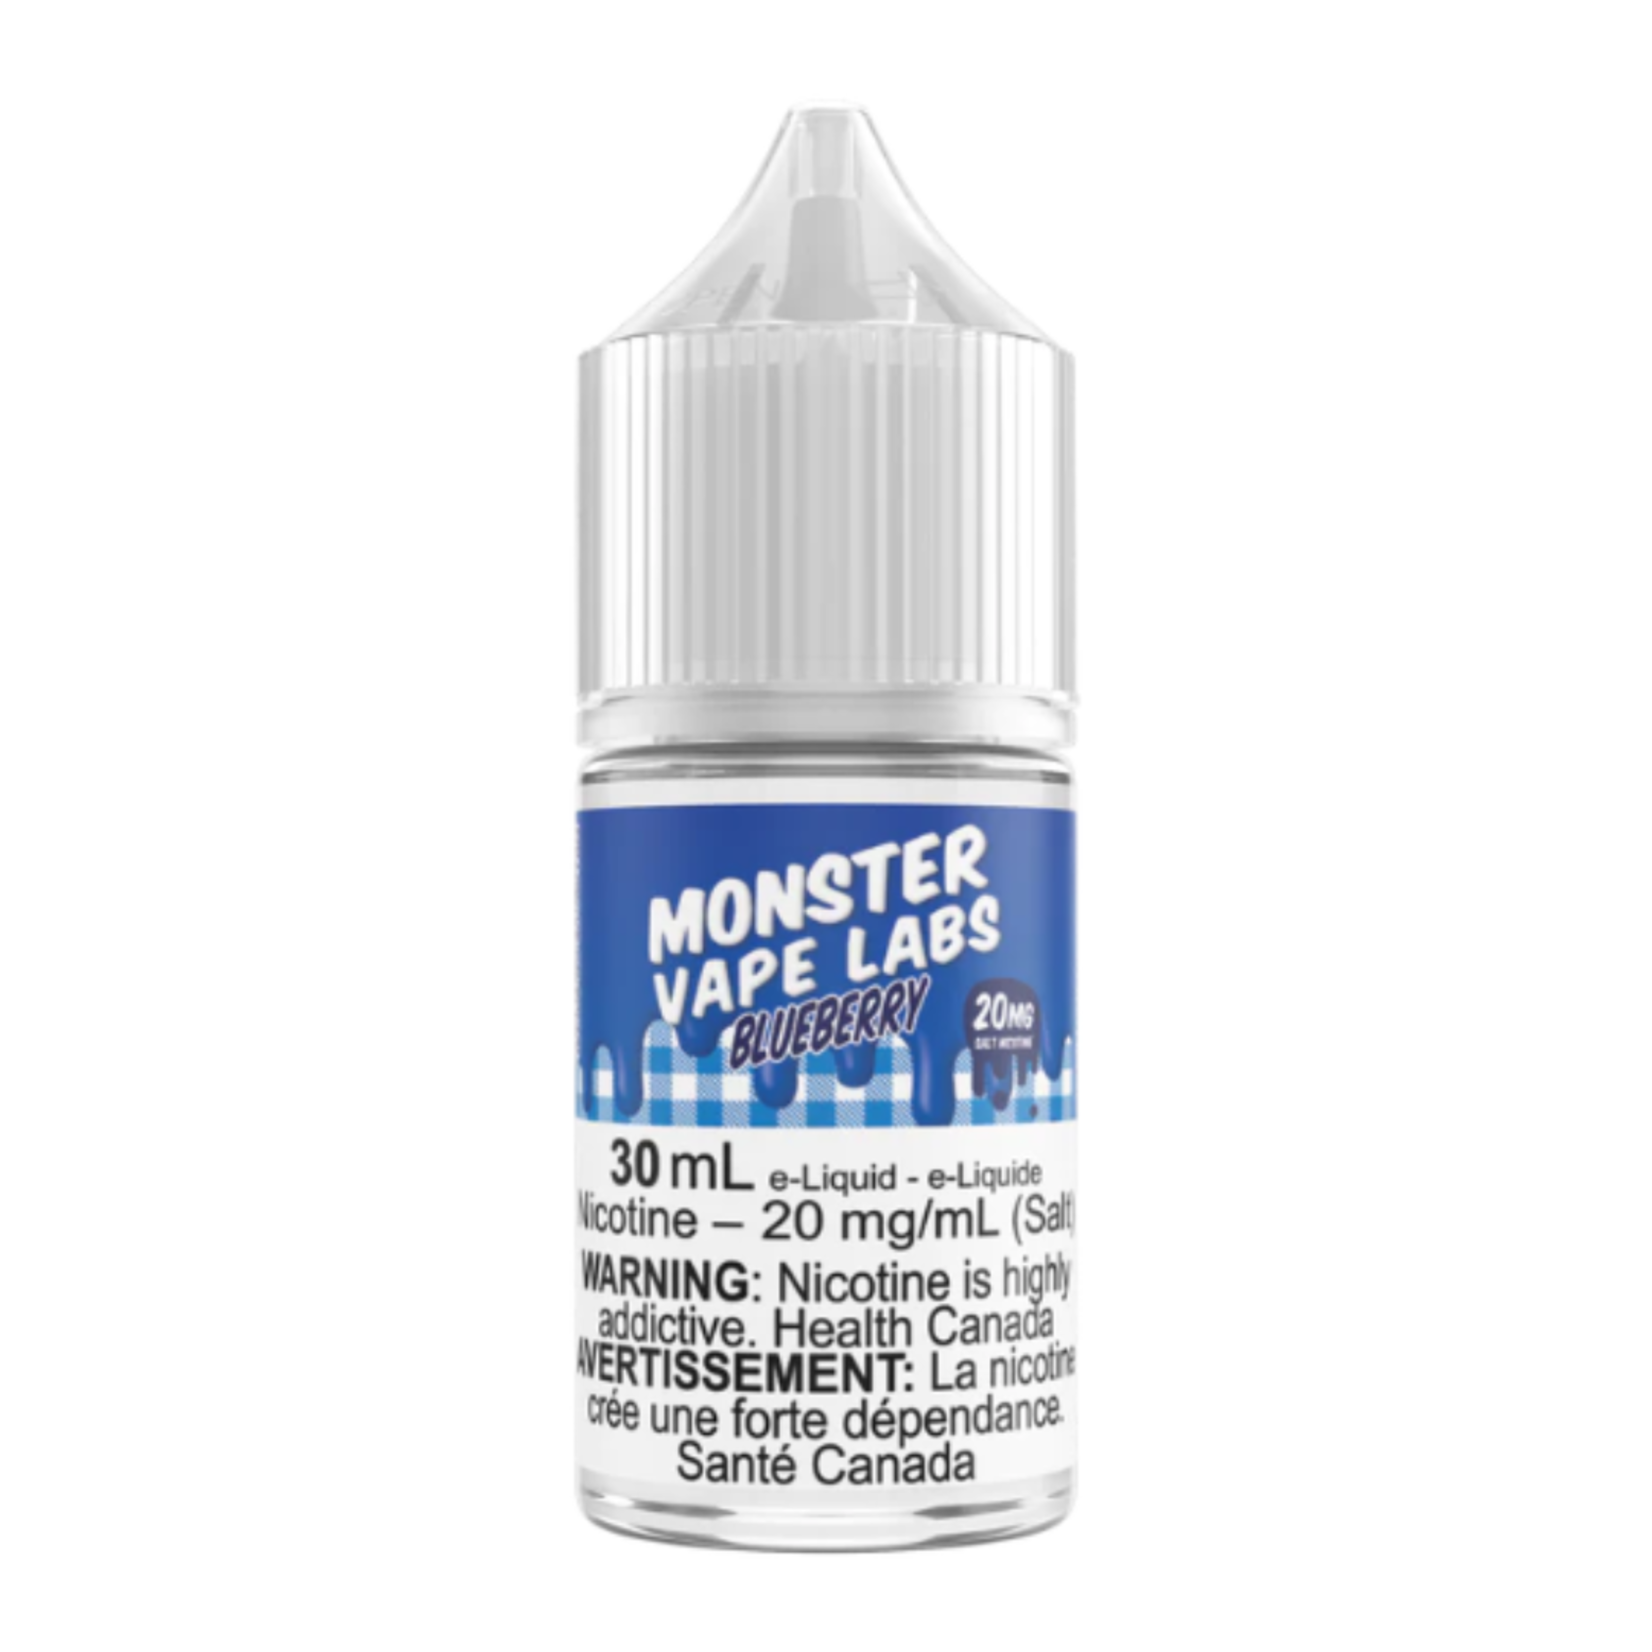 Monster Vape Labs Jam Monster Salt